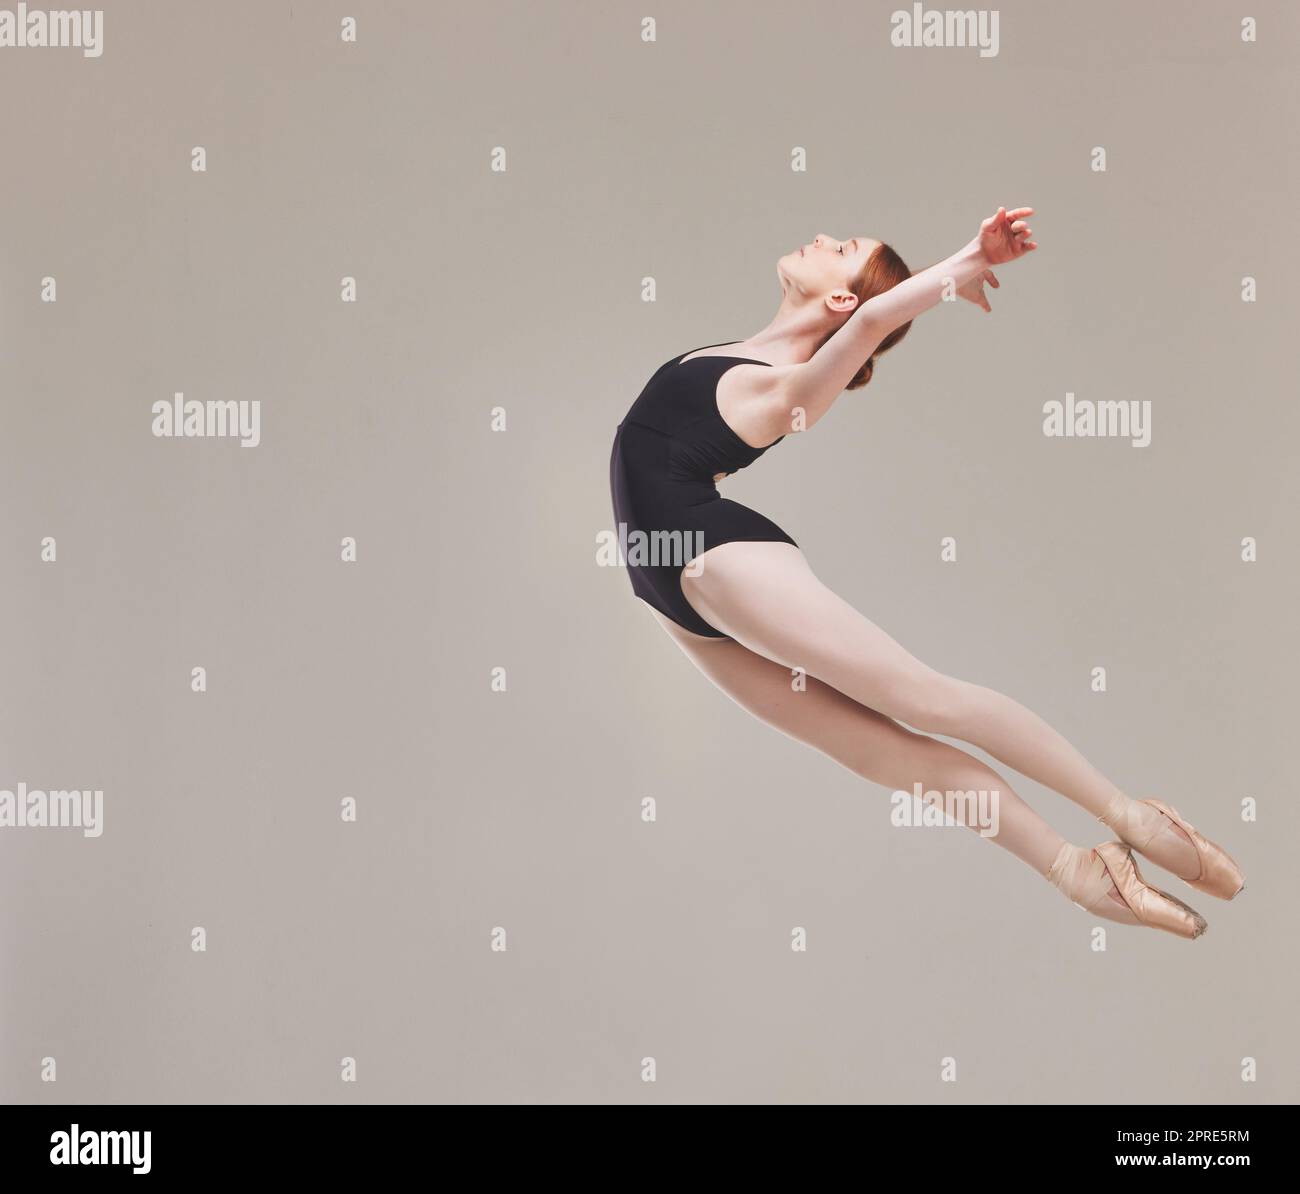 Balletttänzer tanzen, trainieren und künstlerisch in die Luft springen mit Flexibilität, Fitness und Leistung. Gesunde, bewegliche und talentierte Ballerina-Übungen für eine klassische Show im Studio Stockfoto